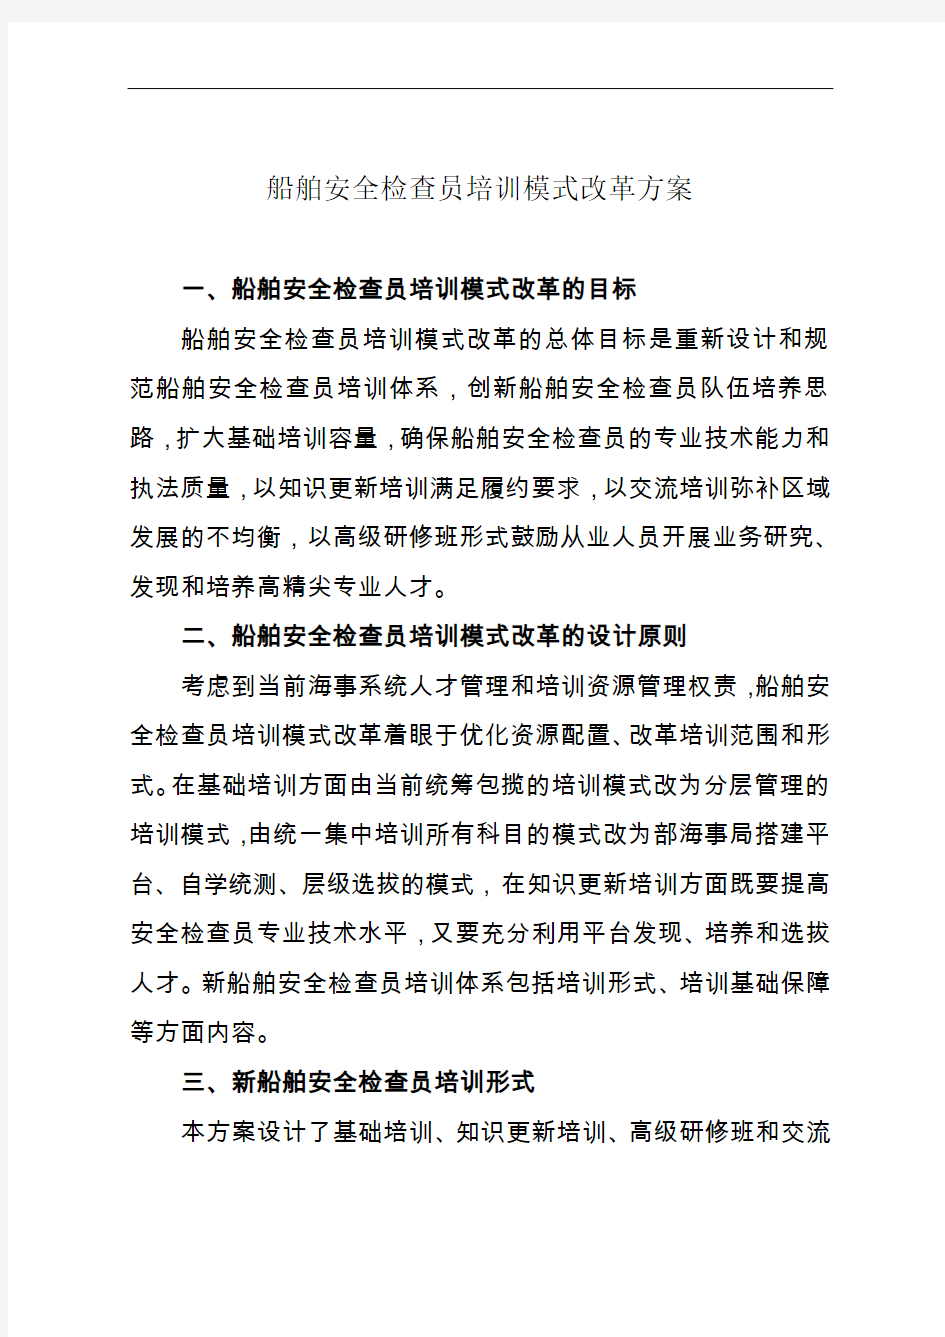 中华人民共和国海事局关于印发《船舶安全检查员培训模式改革方案》的通知